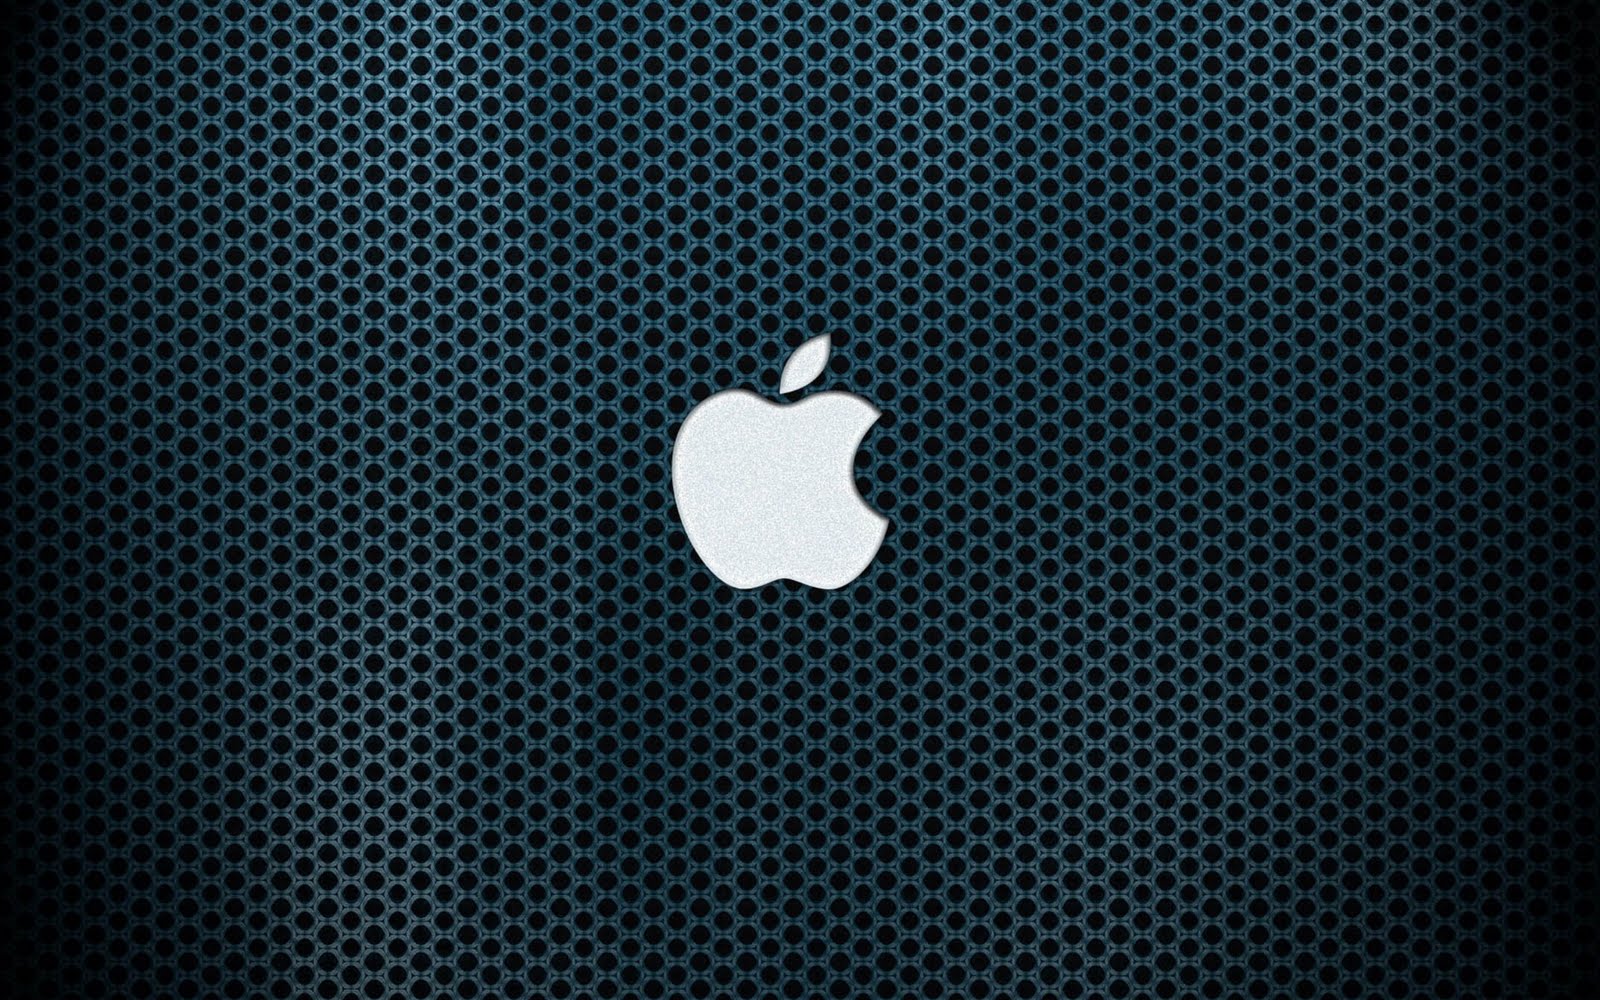 🔥 [49+] Mac OS Wallpaper Downloads | WallpaperSafari